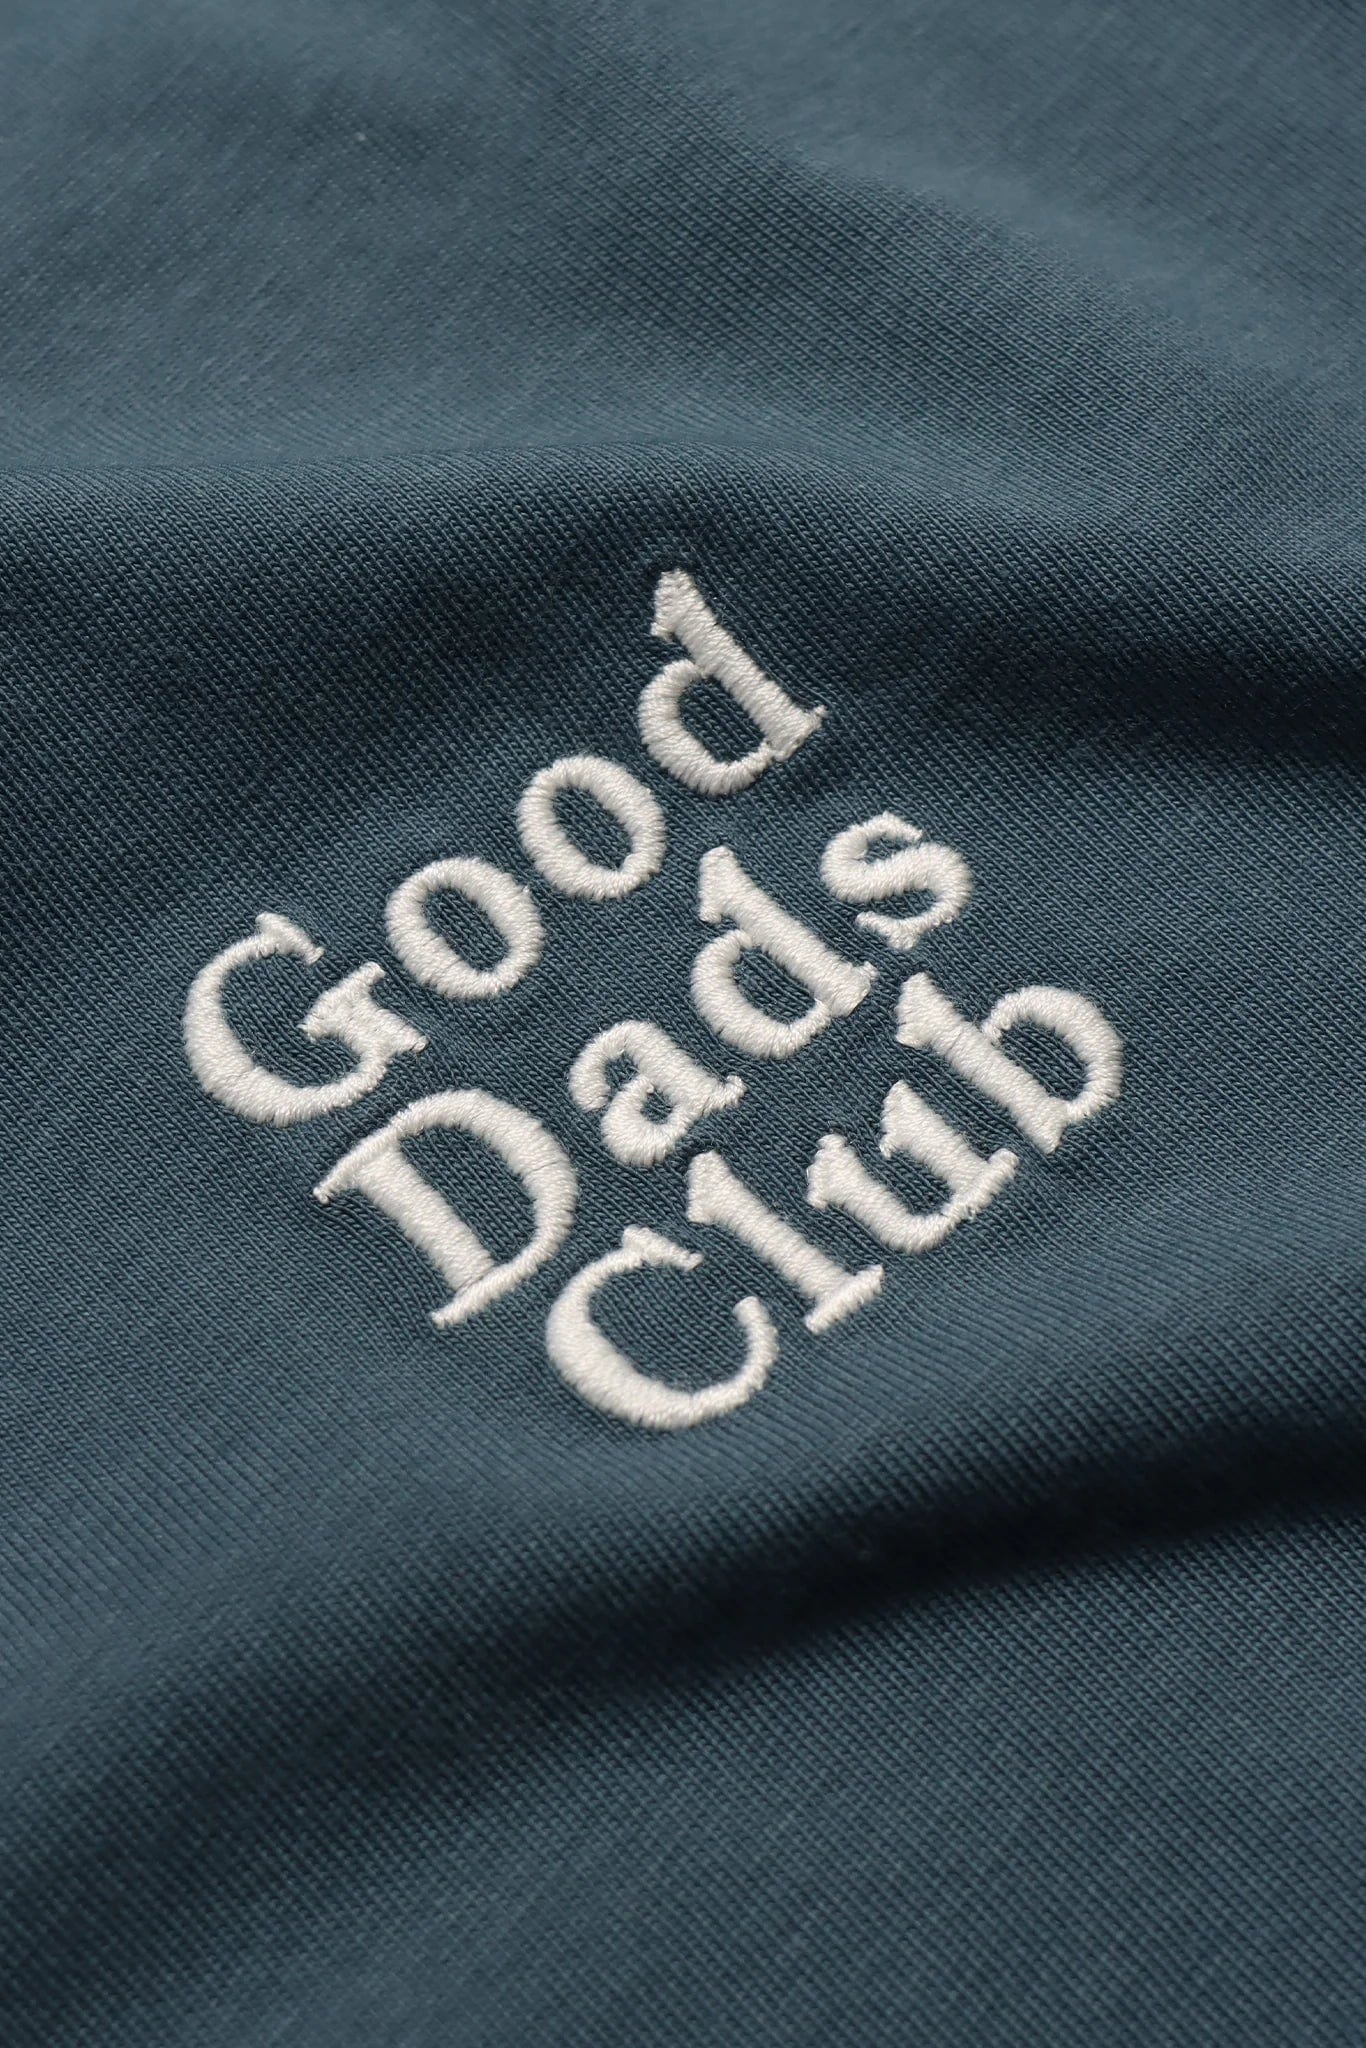 Good Dads Club Tee - Star Gazer Blue